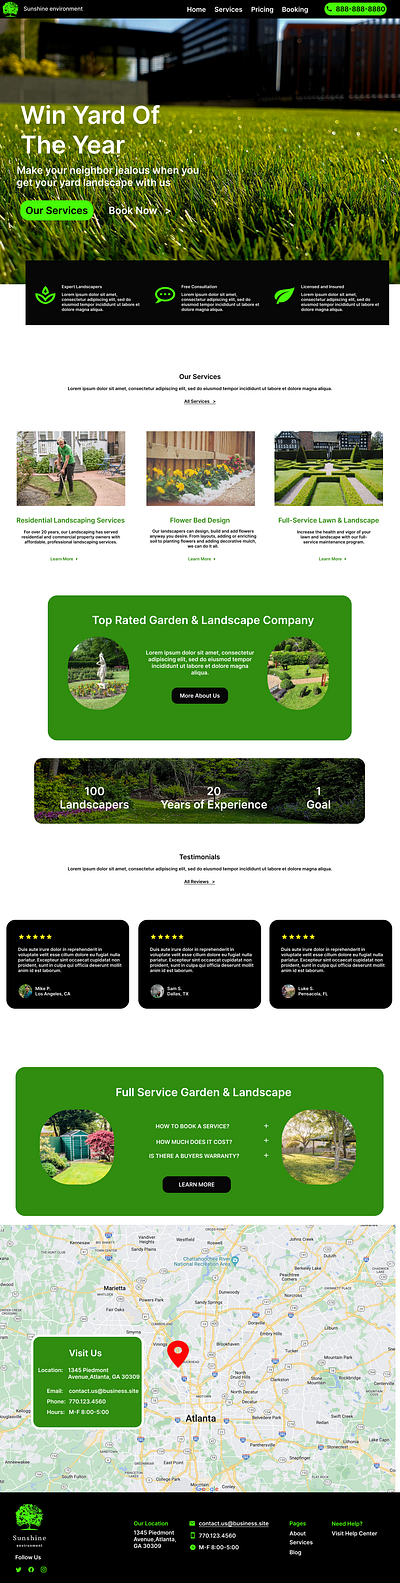 Landscaping Website Design abode xd branding canva design figma landscaping product ui ux ux design website